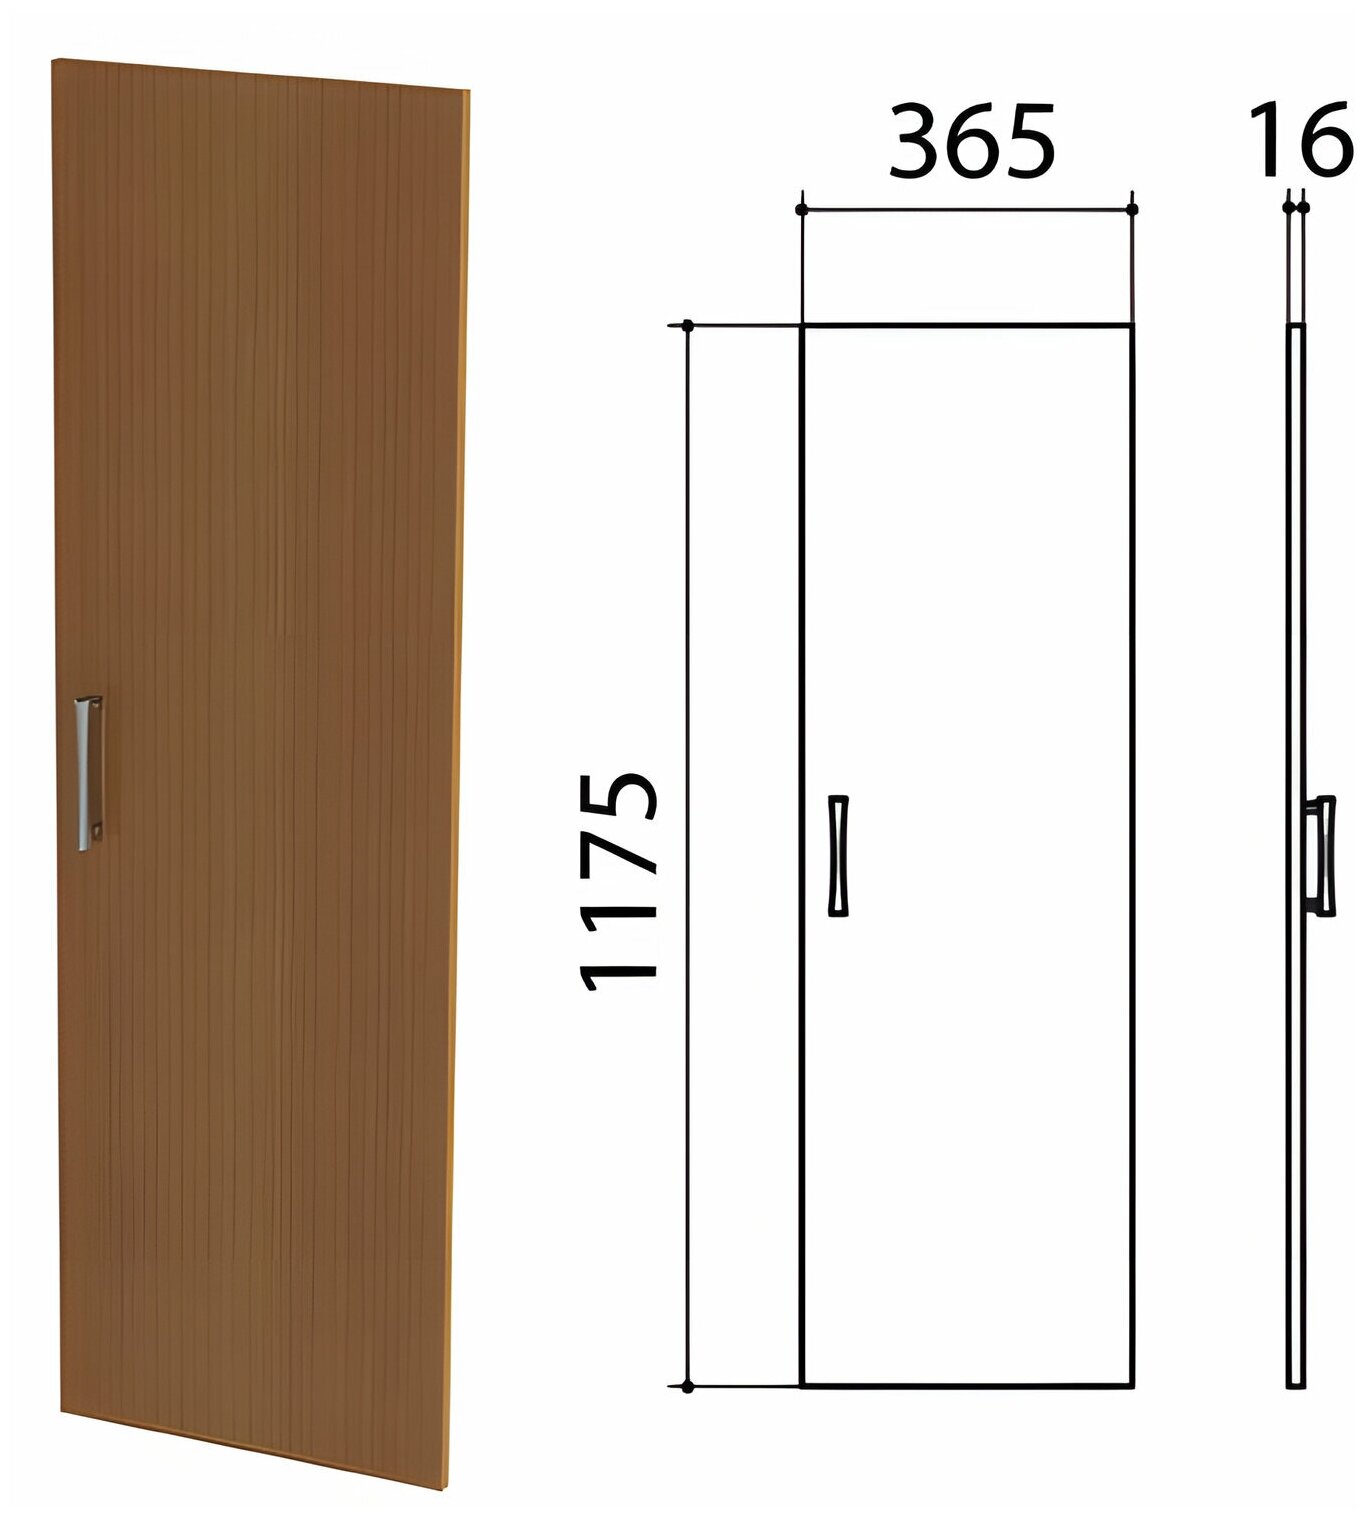 Дверь ЛДСП средняя "Монолит", 365х16х1175 мм, цвет орех гварнери, ДМ42.3 В комплекте: 1шт.